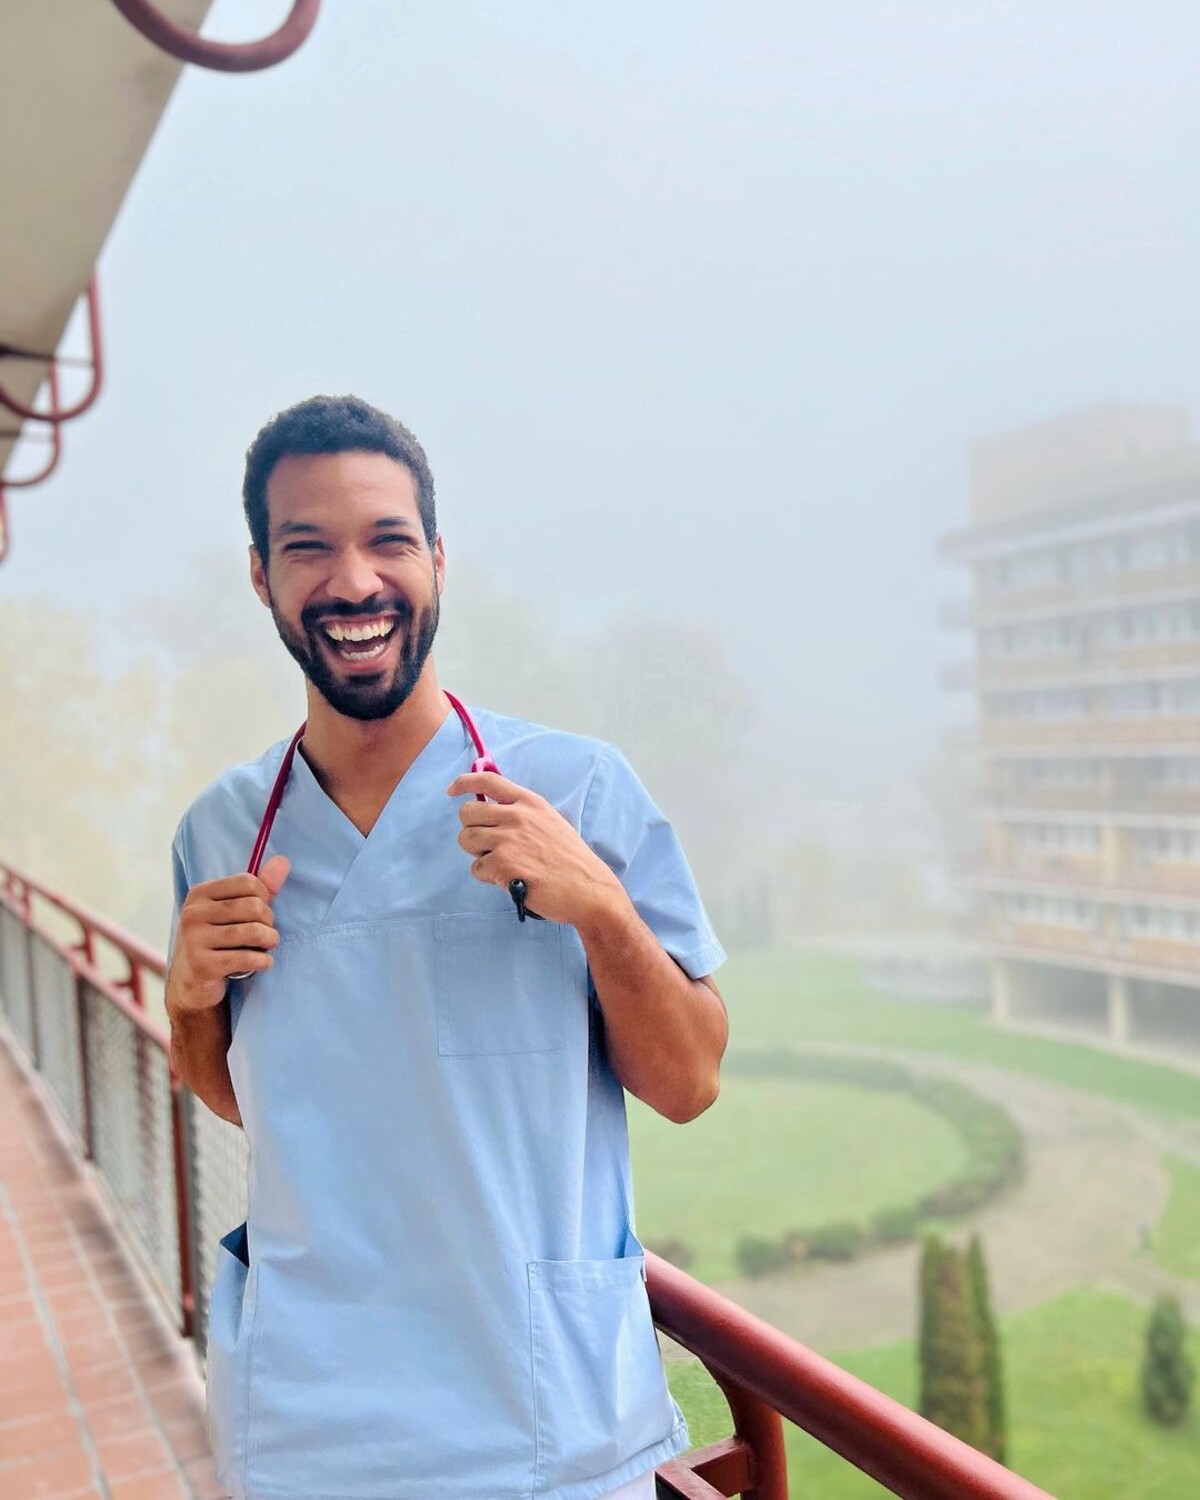 Victor nie je lekárom len v seriáli, ale medicínu študuje aj v reálnom živote. Jeho sen je otvoriť si vlastnú ambulanciu.